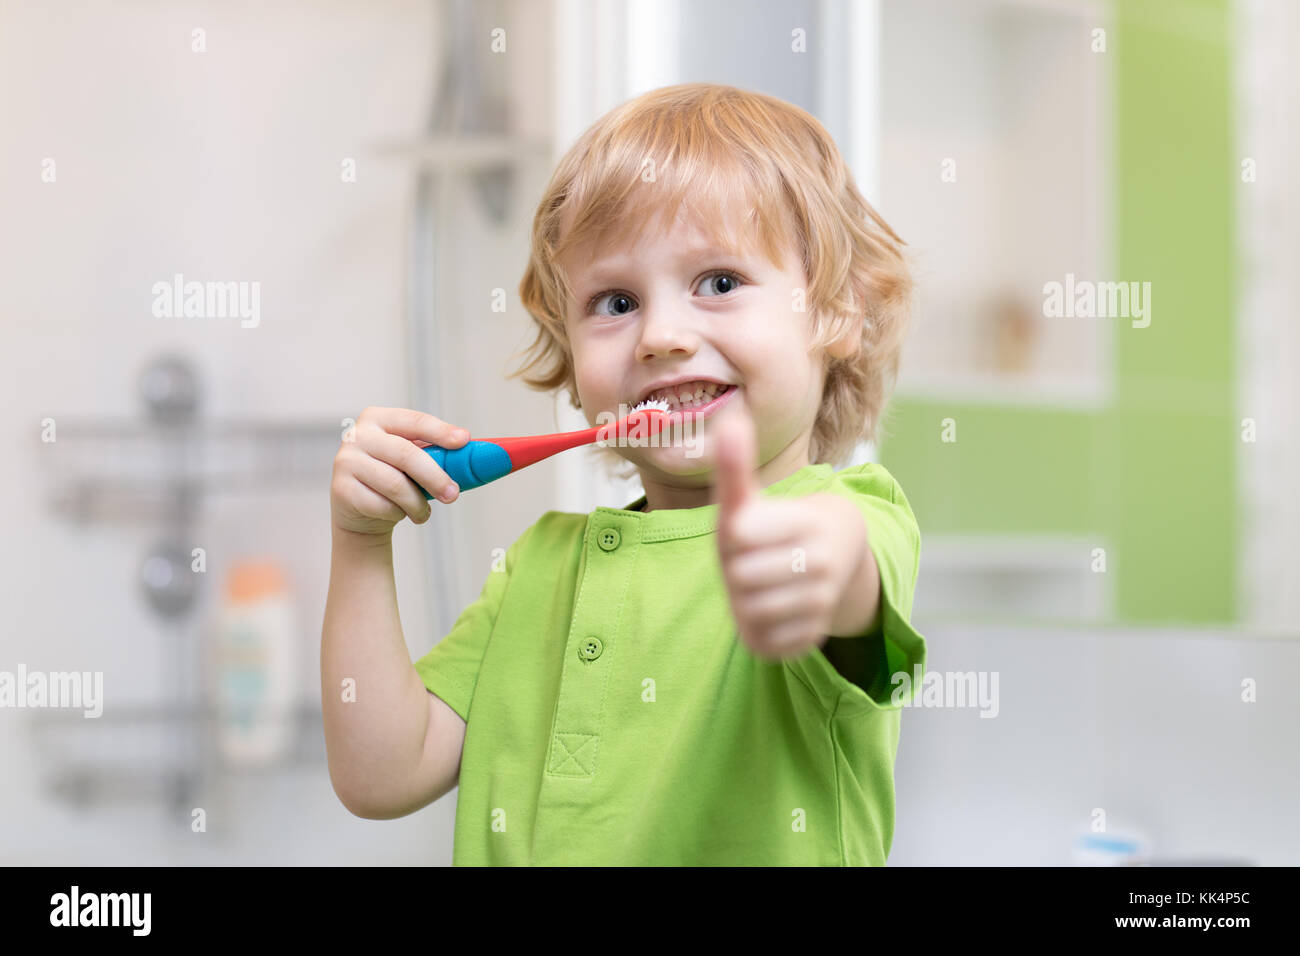 Petit garçon se brosser les dents dans la salle de bains. smiling child holding toothbrush and showing Thumbs up. Banque D'Images